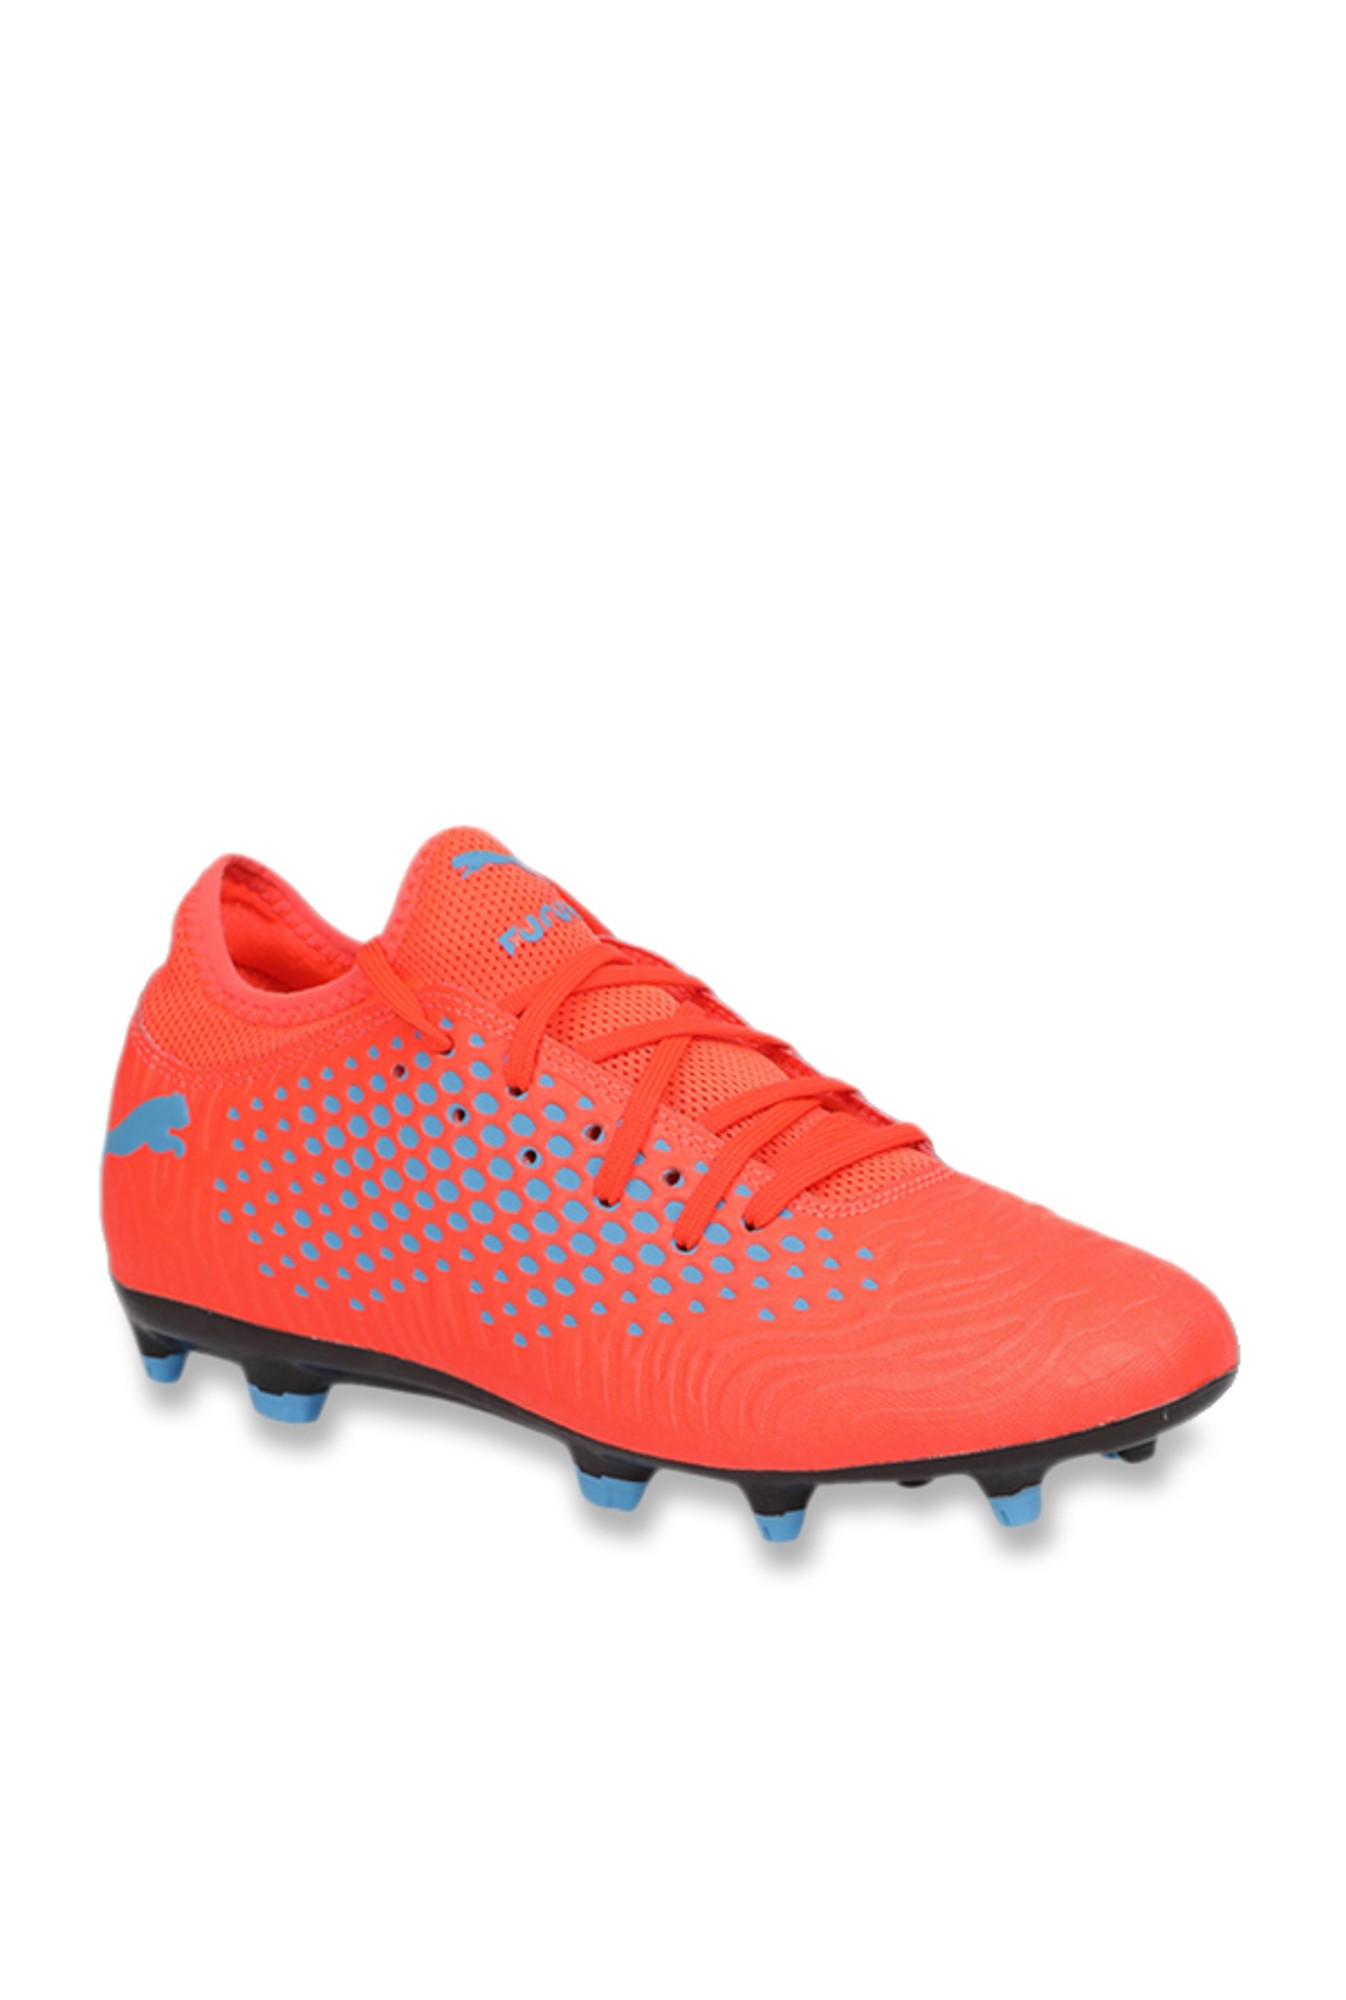 Buy Puma Future 19 4 Fg Ag Red Blast Blue Azur Football Shoes